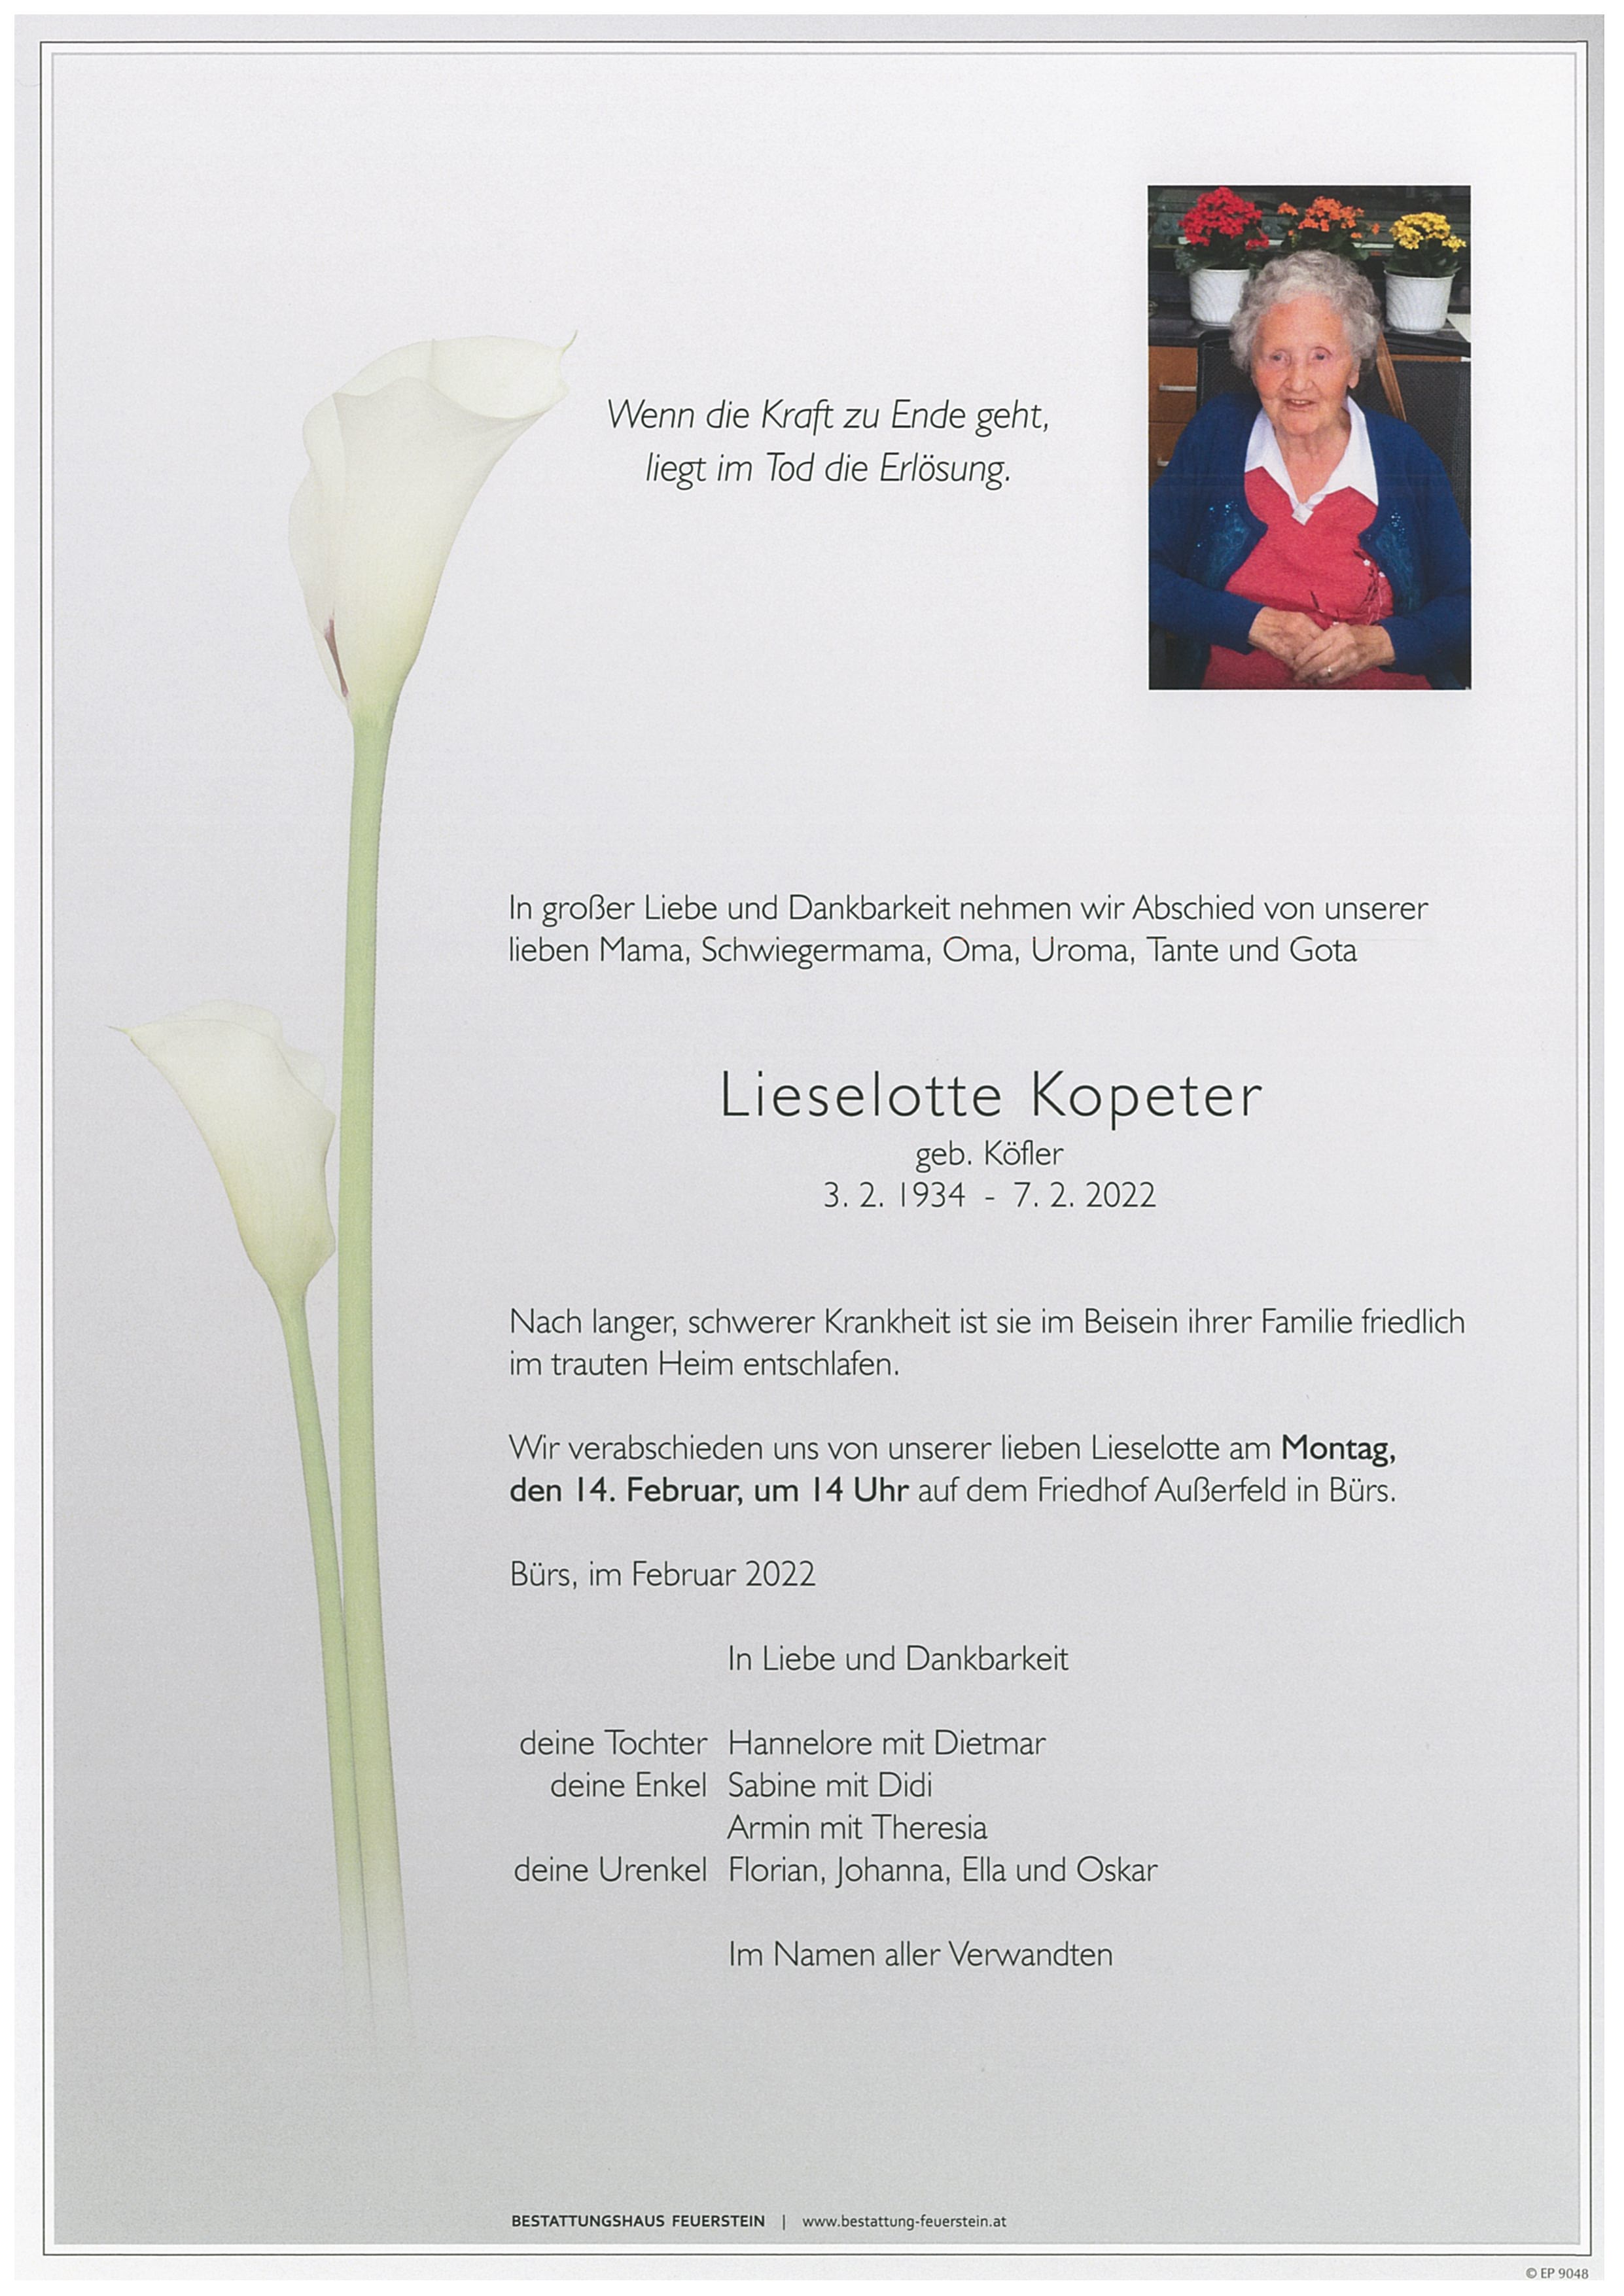 Lieselotte Kopeter